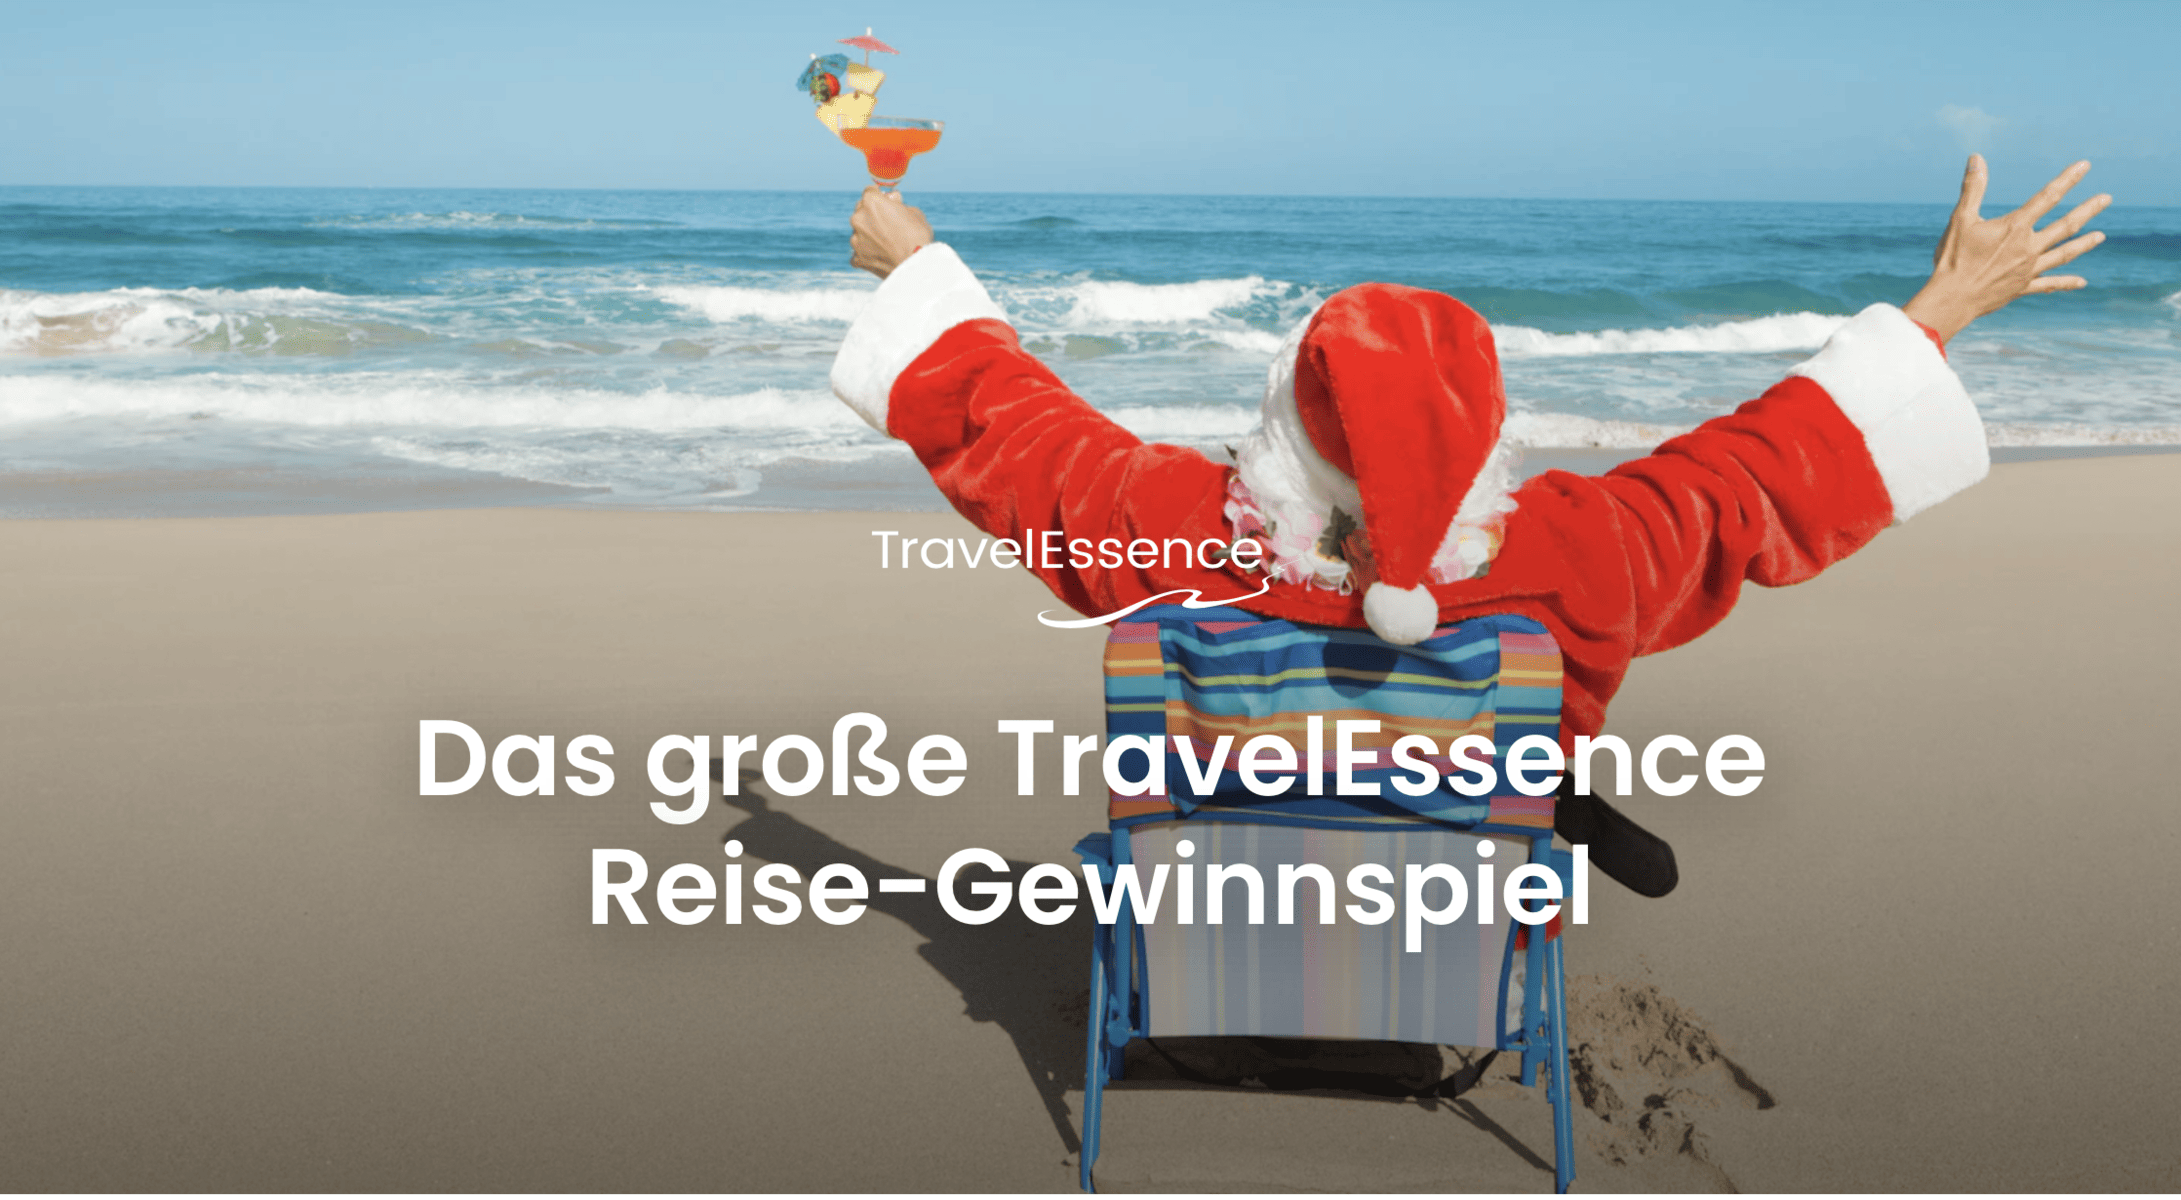 case_TravelEssence-Gewinnspiel Reise nach Neuseeland oder Australien 